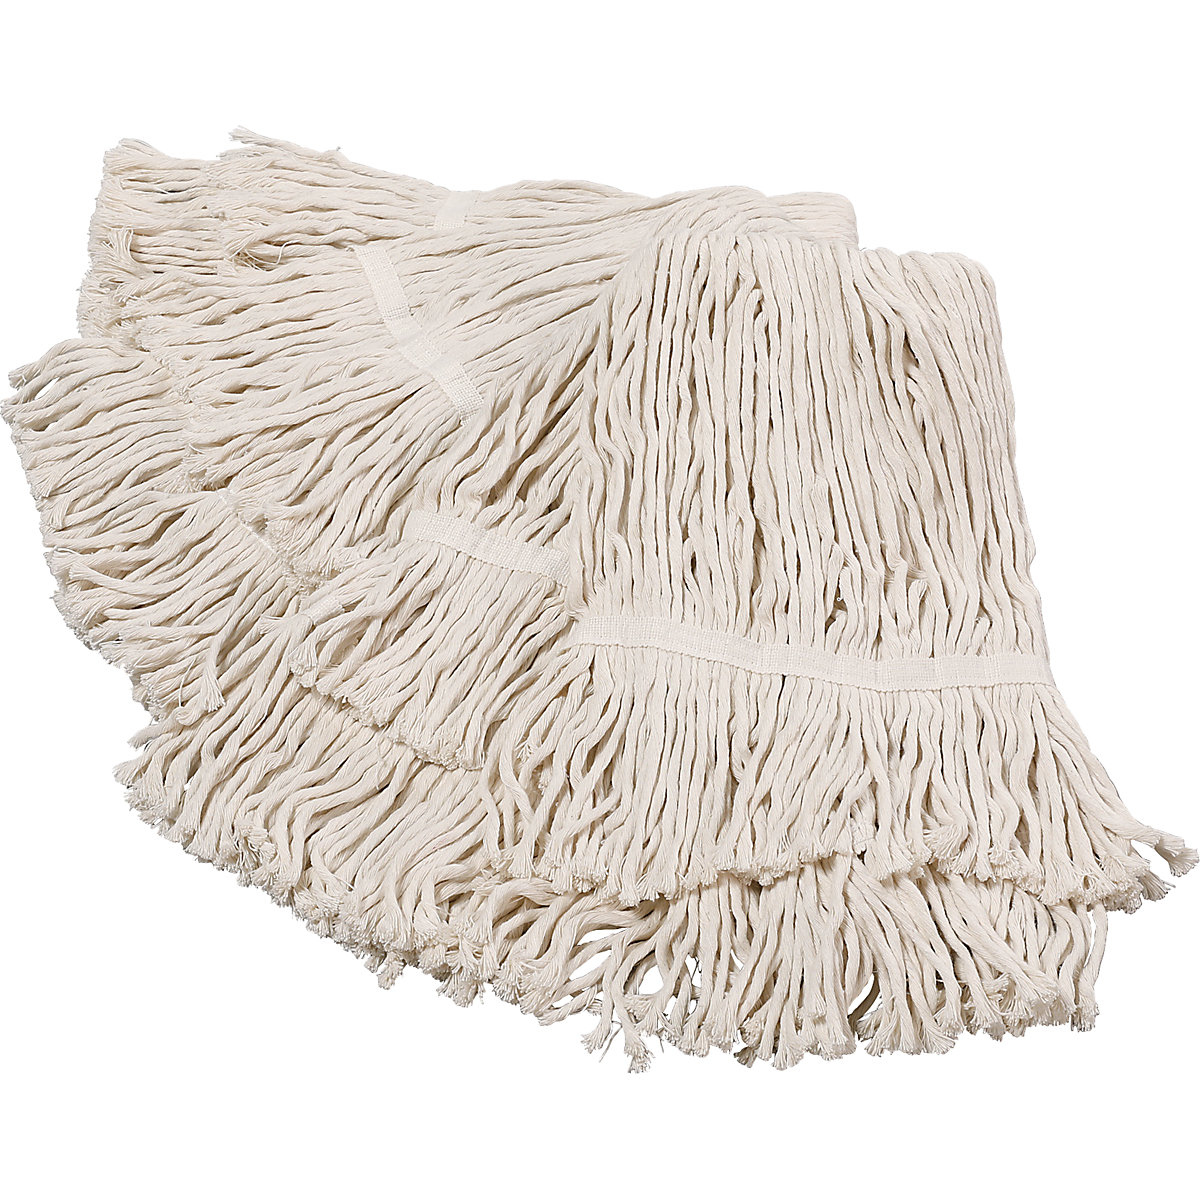 Strapcový mop, OJ 10 ks, tkanina z bavlny a polyesteru, biela